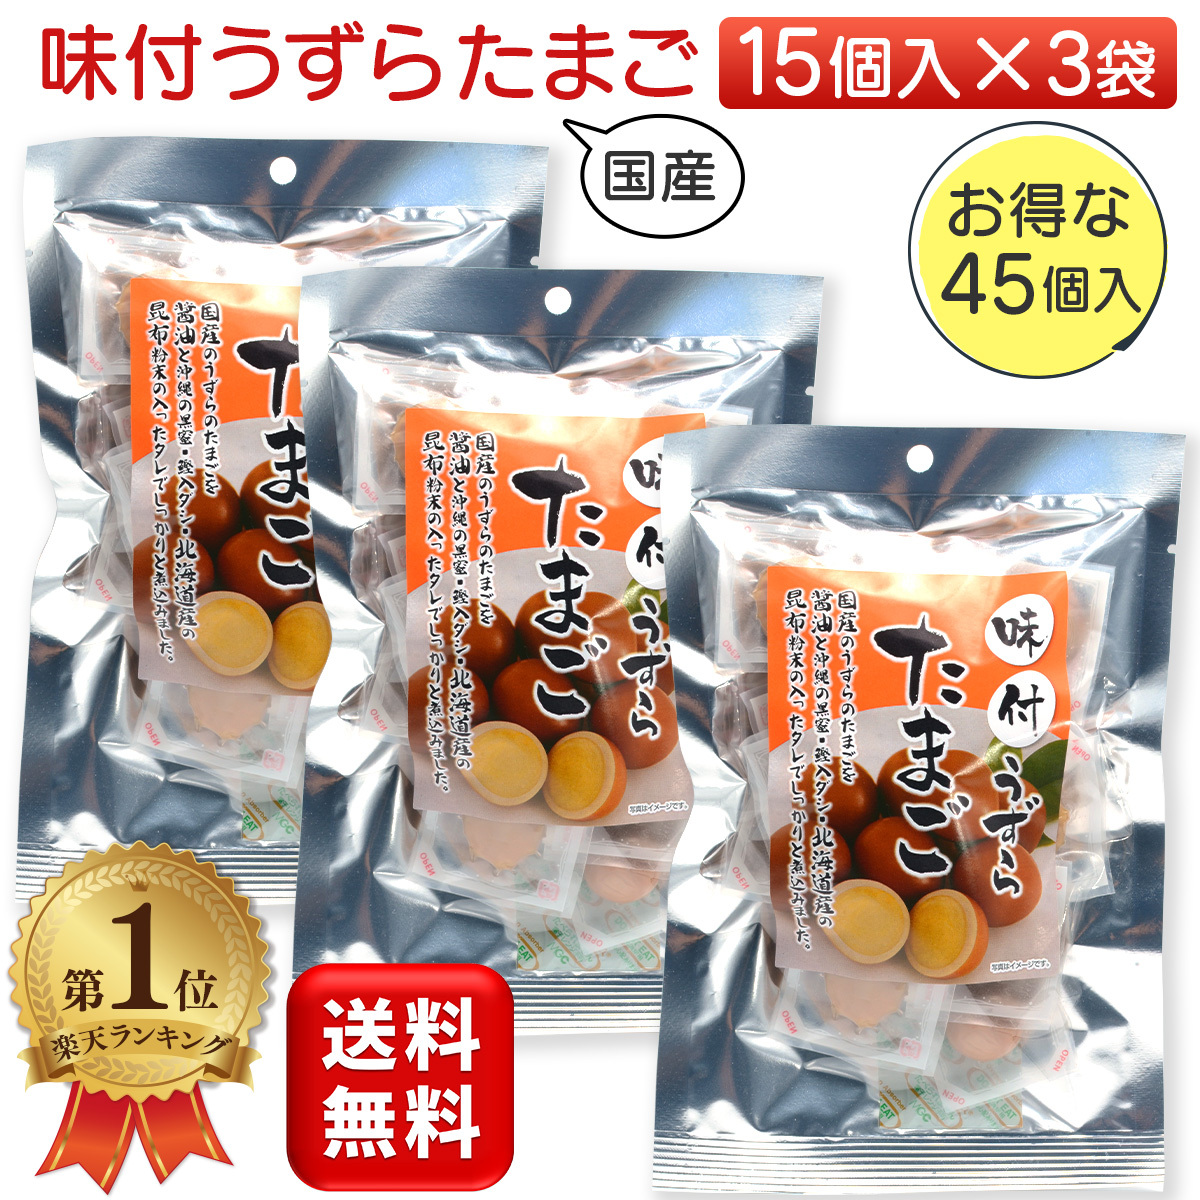 ♡国産♡北海道♡沖縄♡味付うずらたまご♡うずらの卵♡8個入 1袋♡ 通販